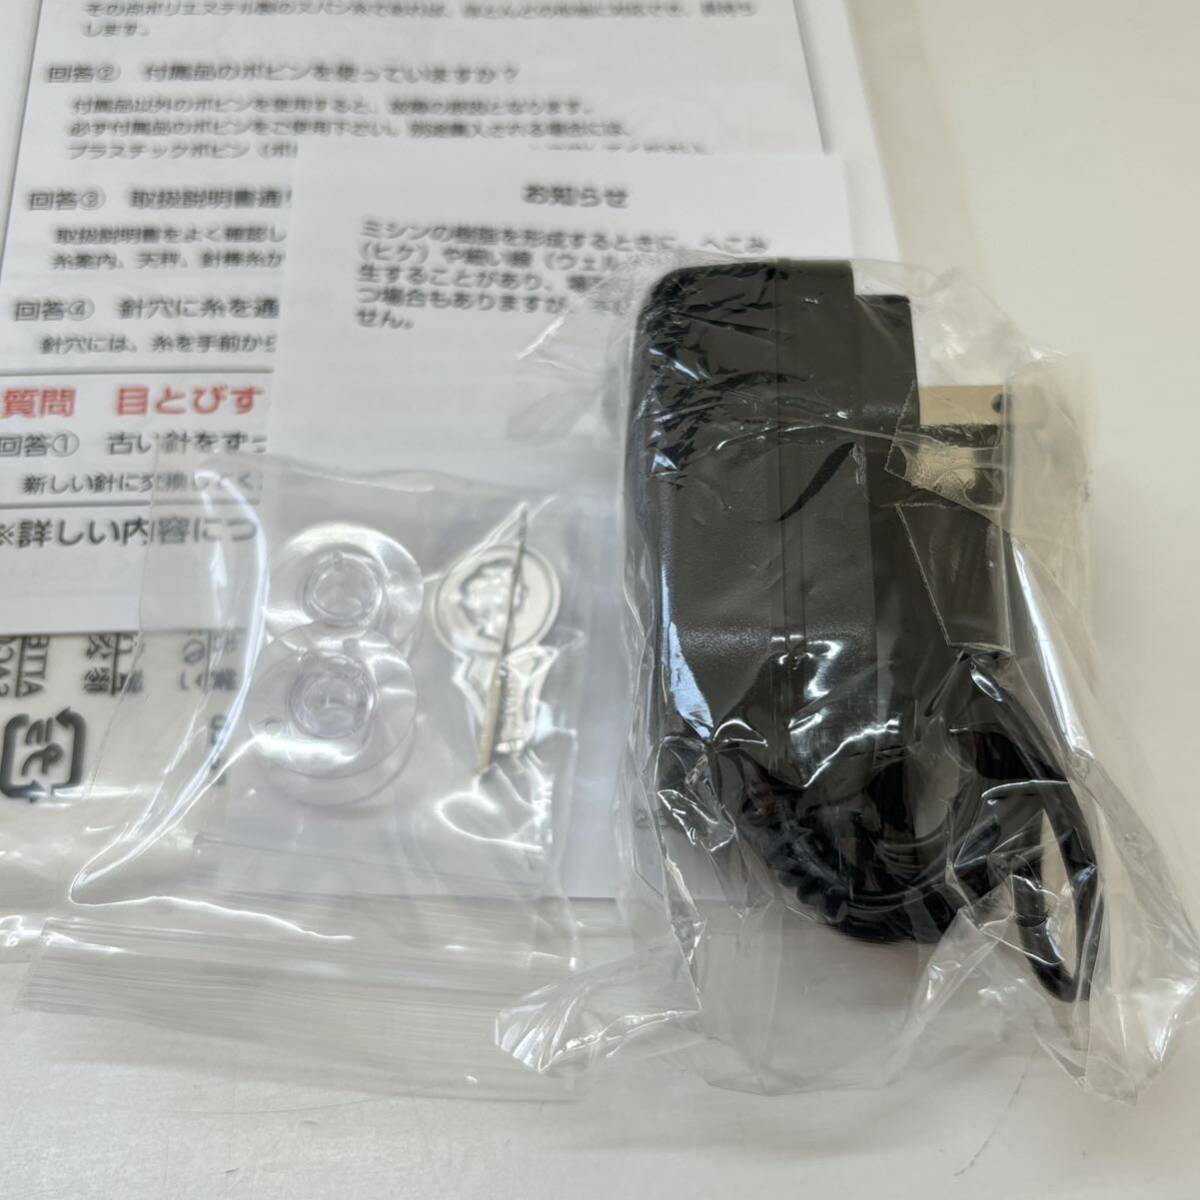 展示品 ジャノメ コンパクト電動ミシン IJ-240B ブラック 軽量 フットスイッチ 縫製スピード調整可能